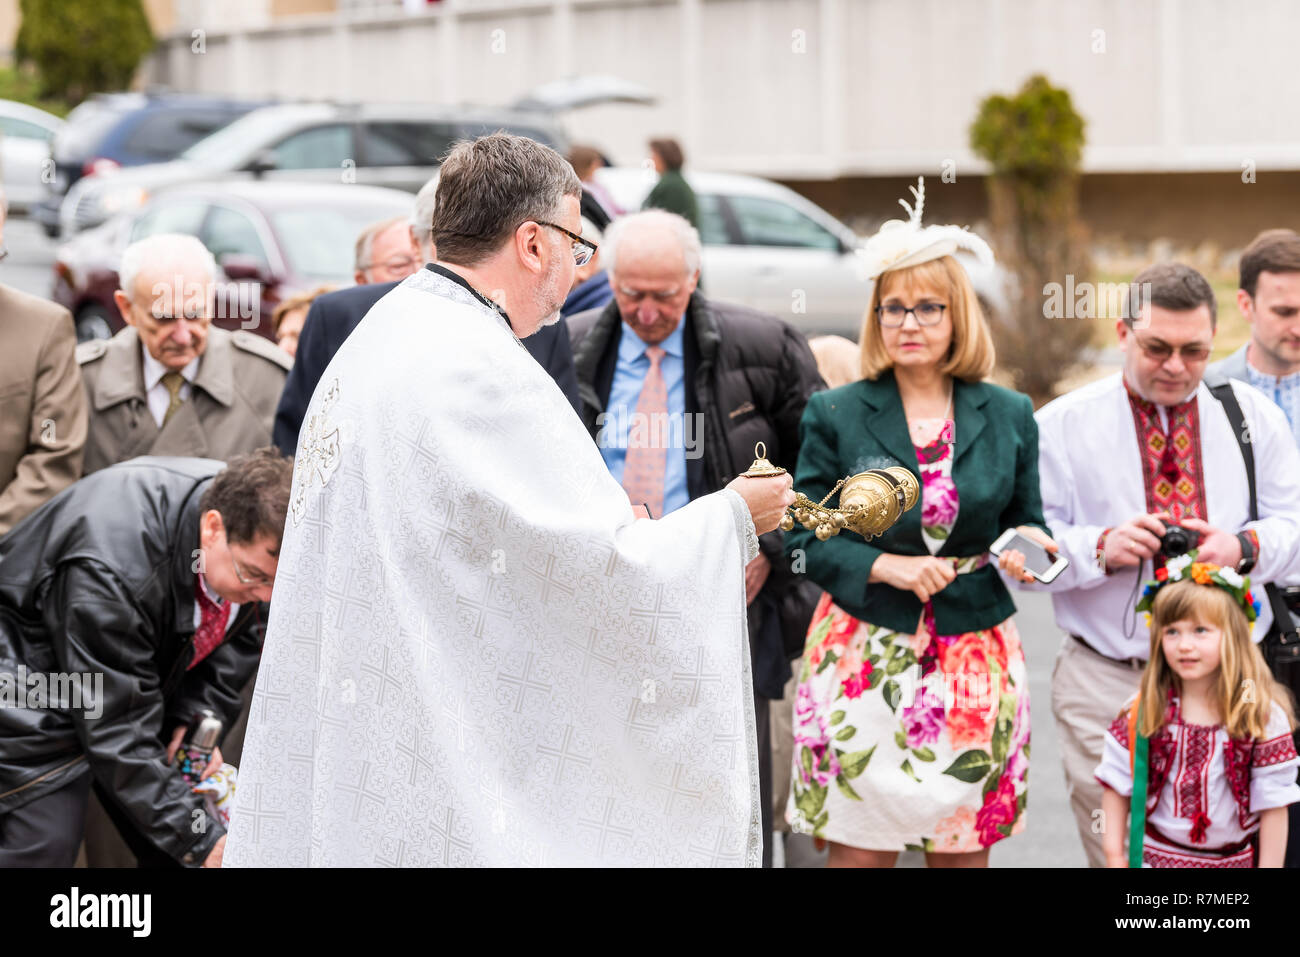 Washington DC, USA - April 1, 2018: Menschen, Priester beten, holding Pfanne Segen zu Ostern Körbe auf dem Ukrainischen Katholischen Nationalen Schrein der Heiligen Fa Stockfoto